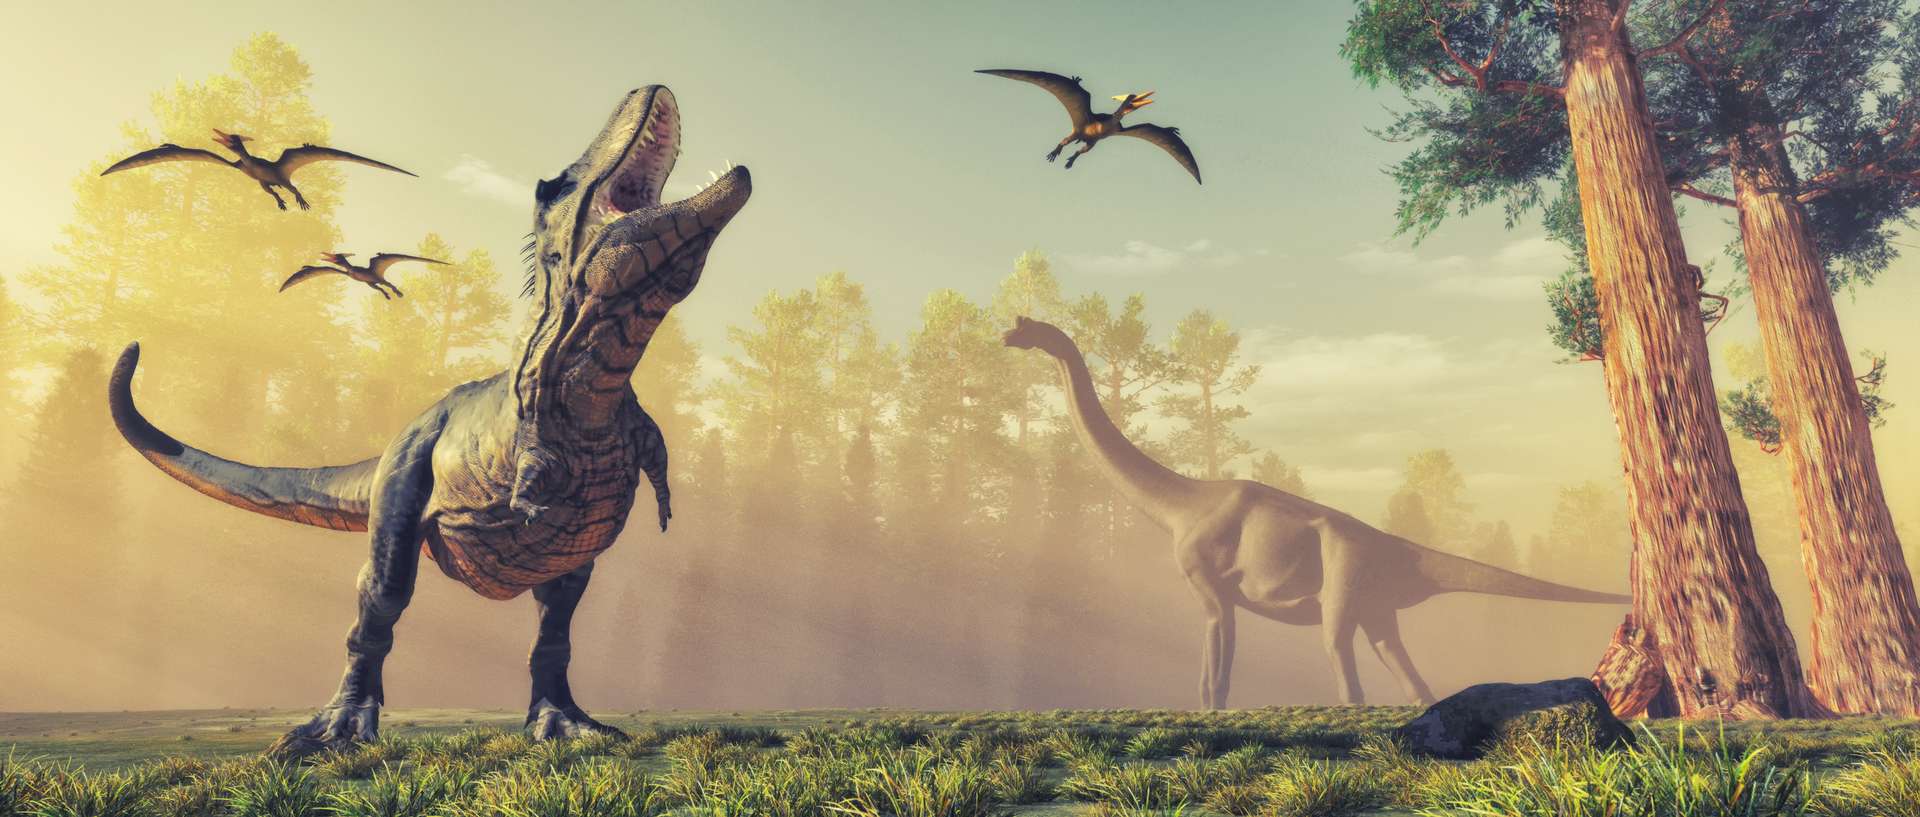 Les tyrannosaures qui ont vécu sur Terre étaient moins nombreux qu’on ne le pensait